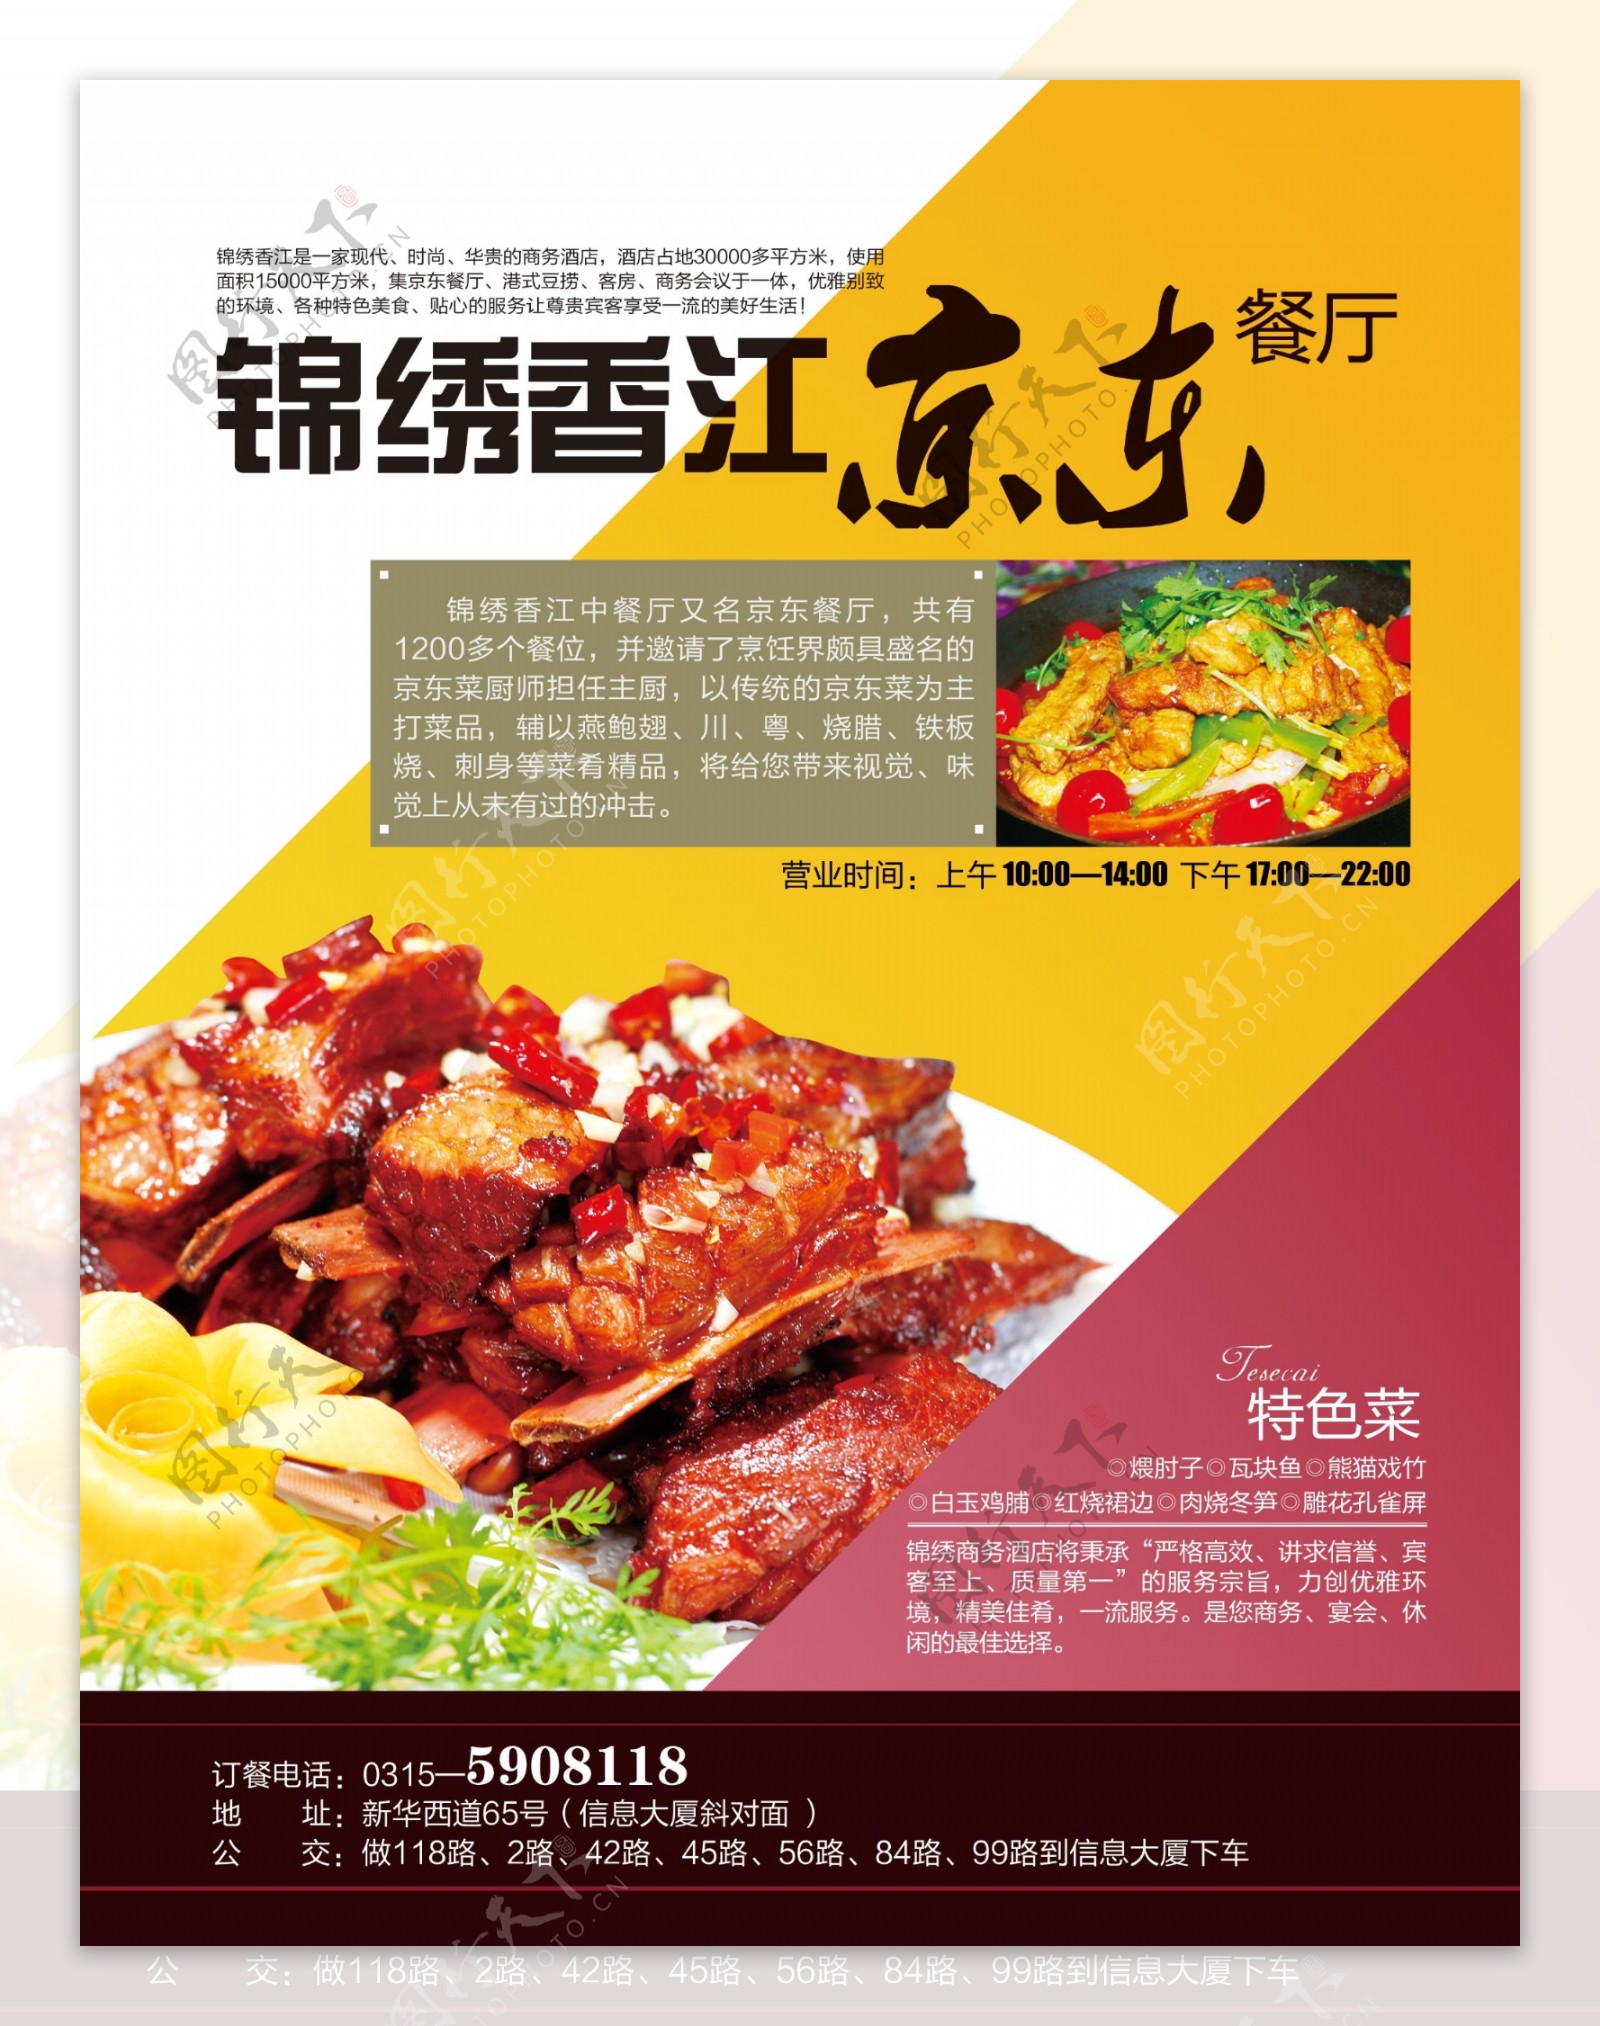 京东餐饮宣传海报